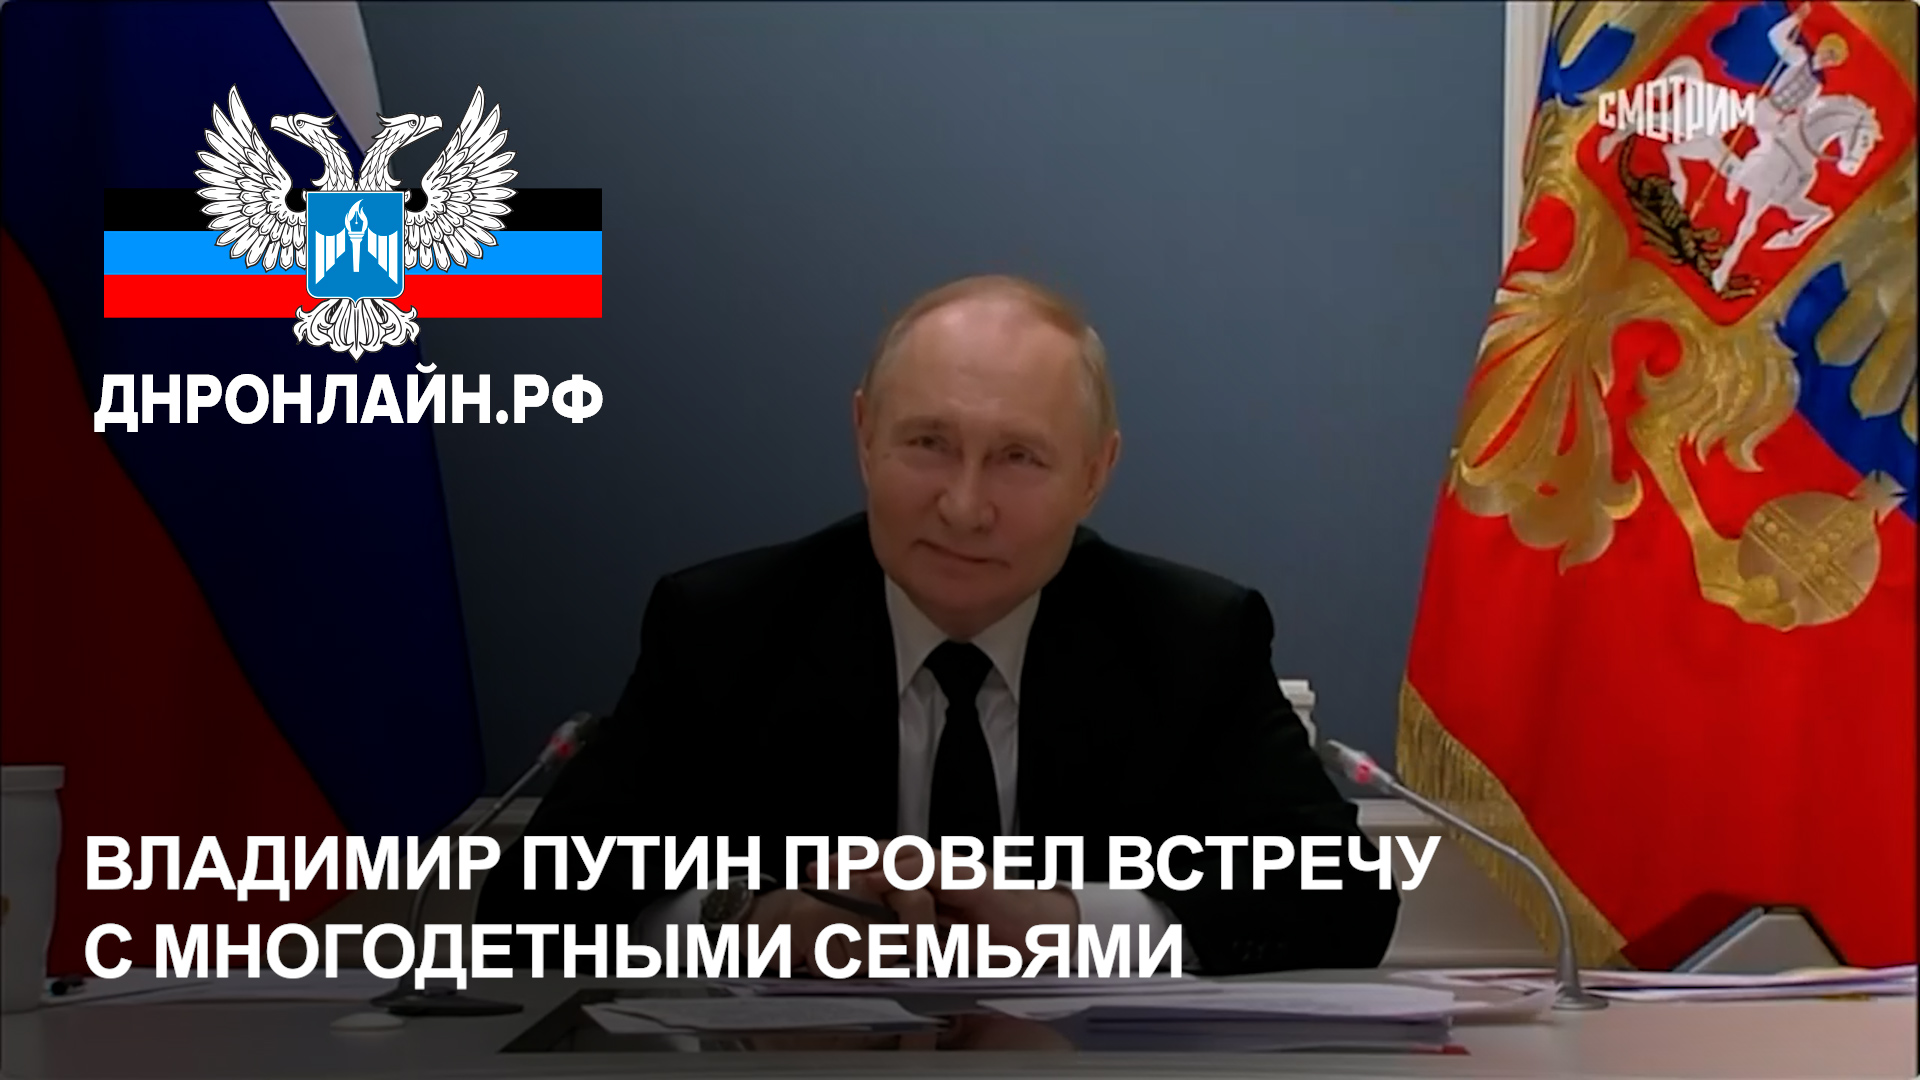 Владимир Путин провел встречу с многодетными семьями